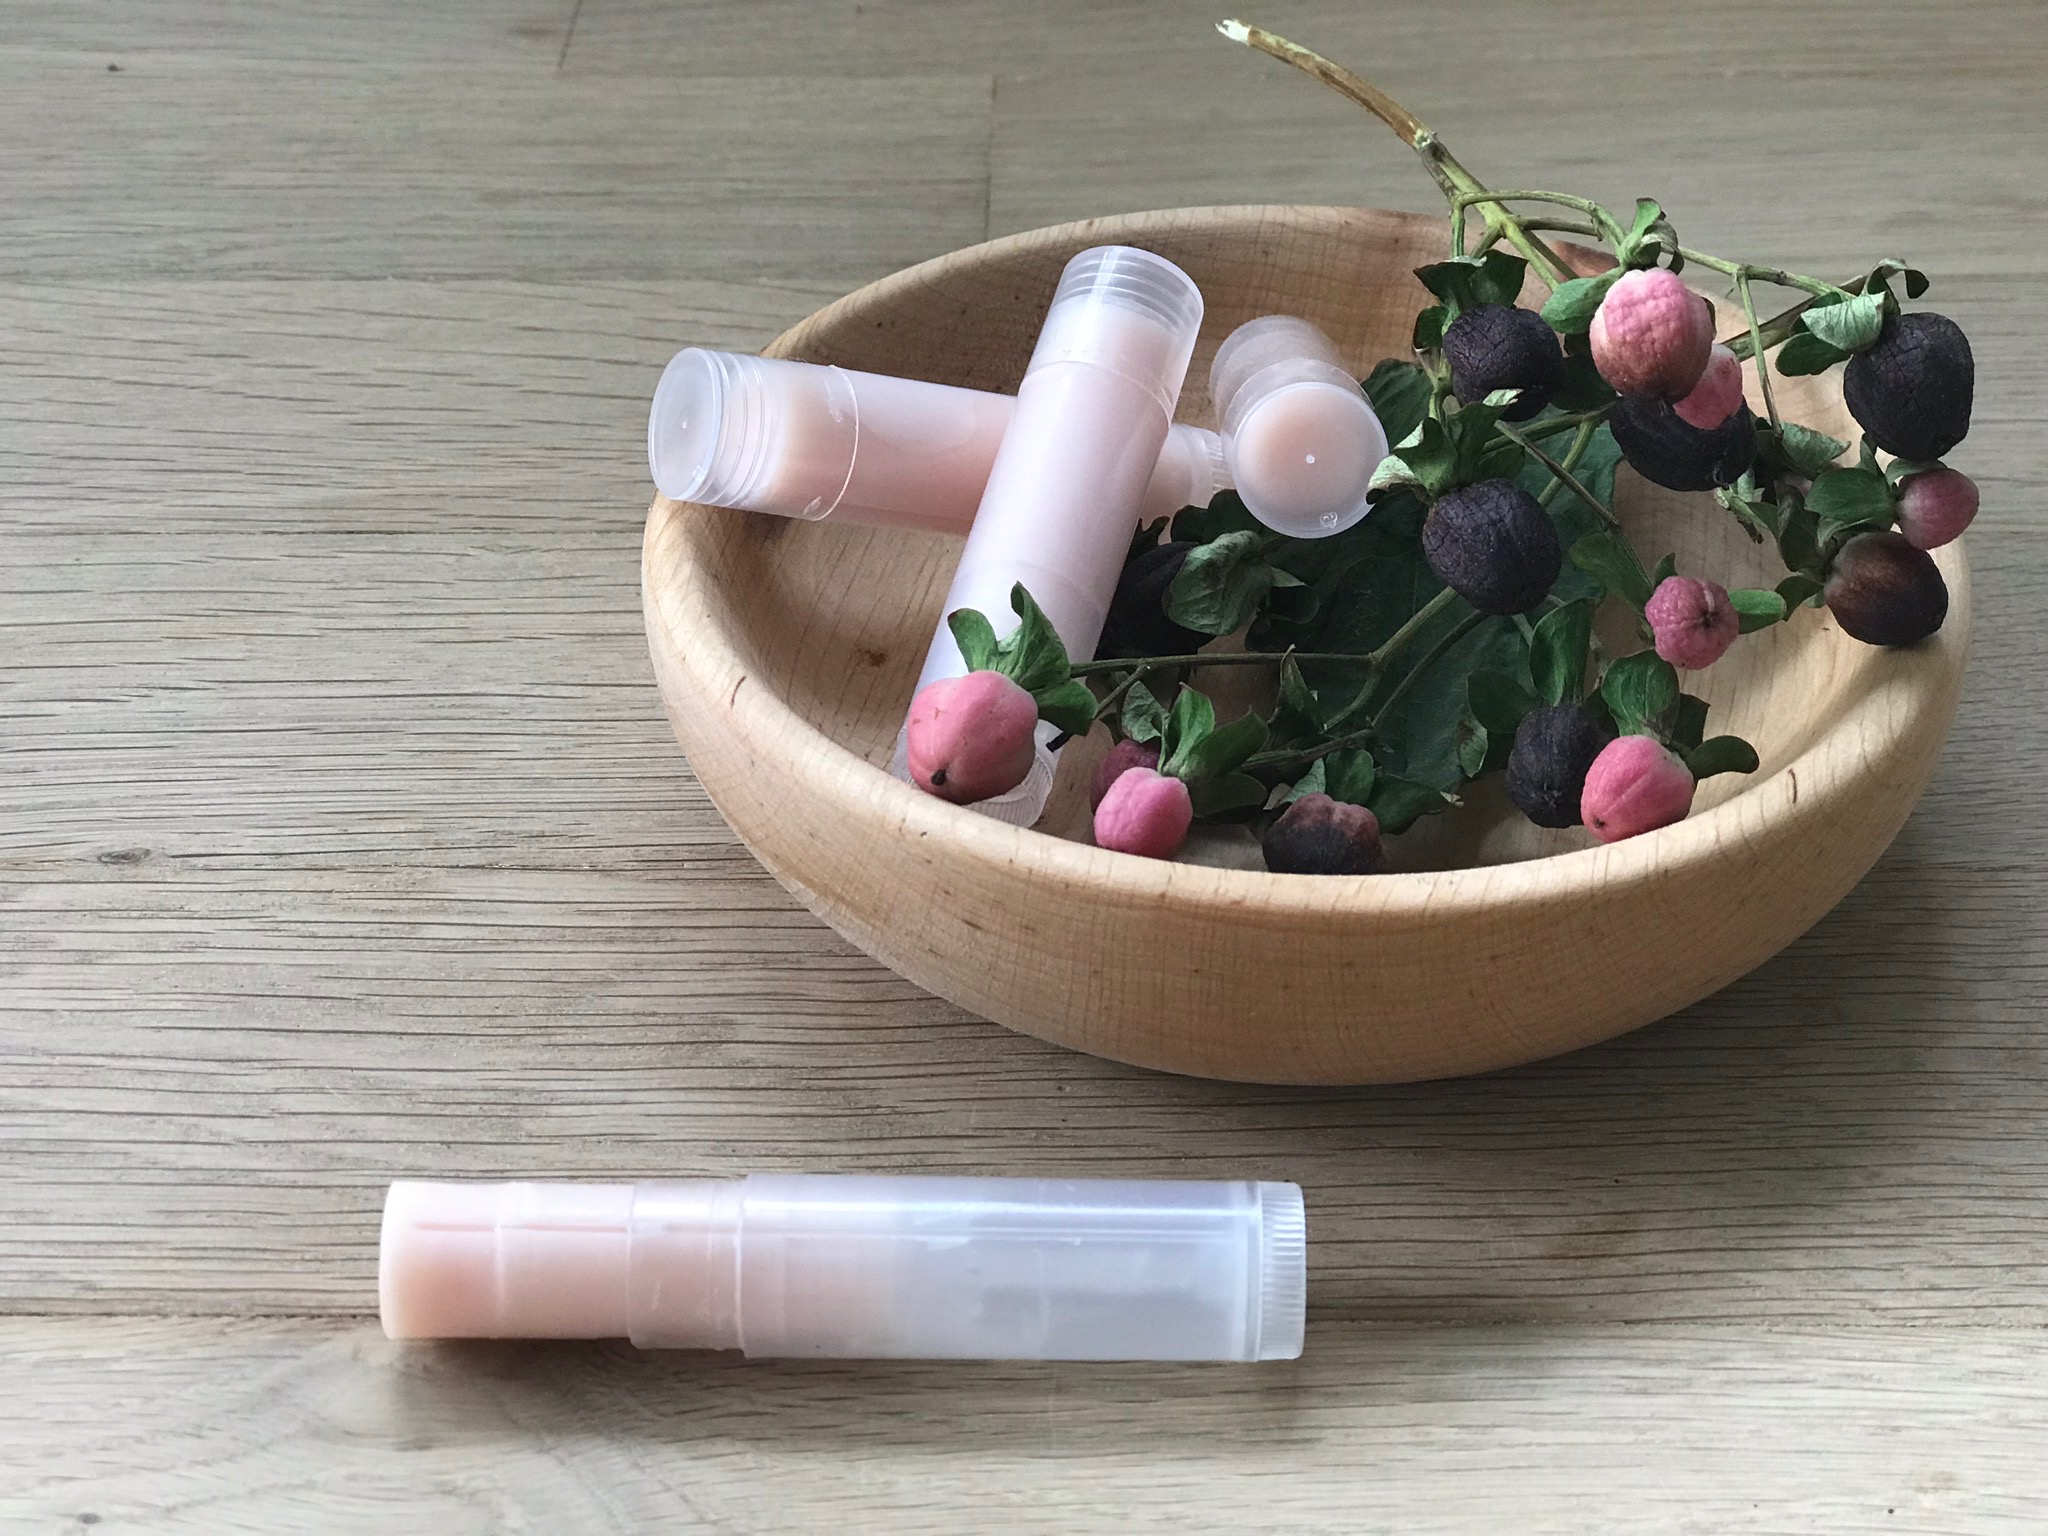 Rezept Kokos Lippenstifte in Rosé, ein schönes DIY für den Kindergeburtstag, oder auch einfach so für Mamas Handtsche. Noch mehr Naturkosmetik Rezepte findet ihr auf unserer Seite www.elfenkindberlin.de